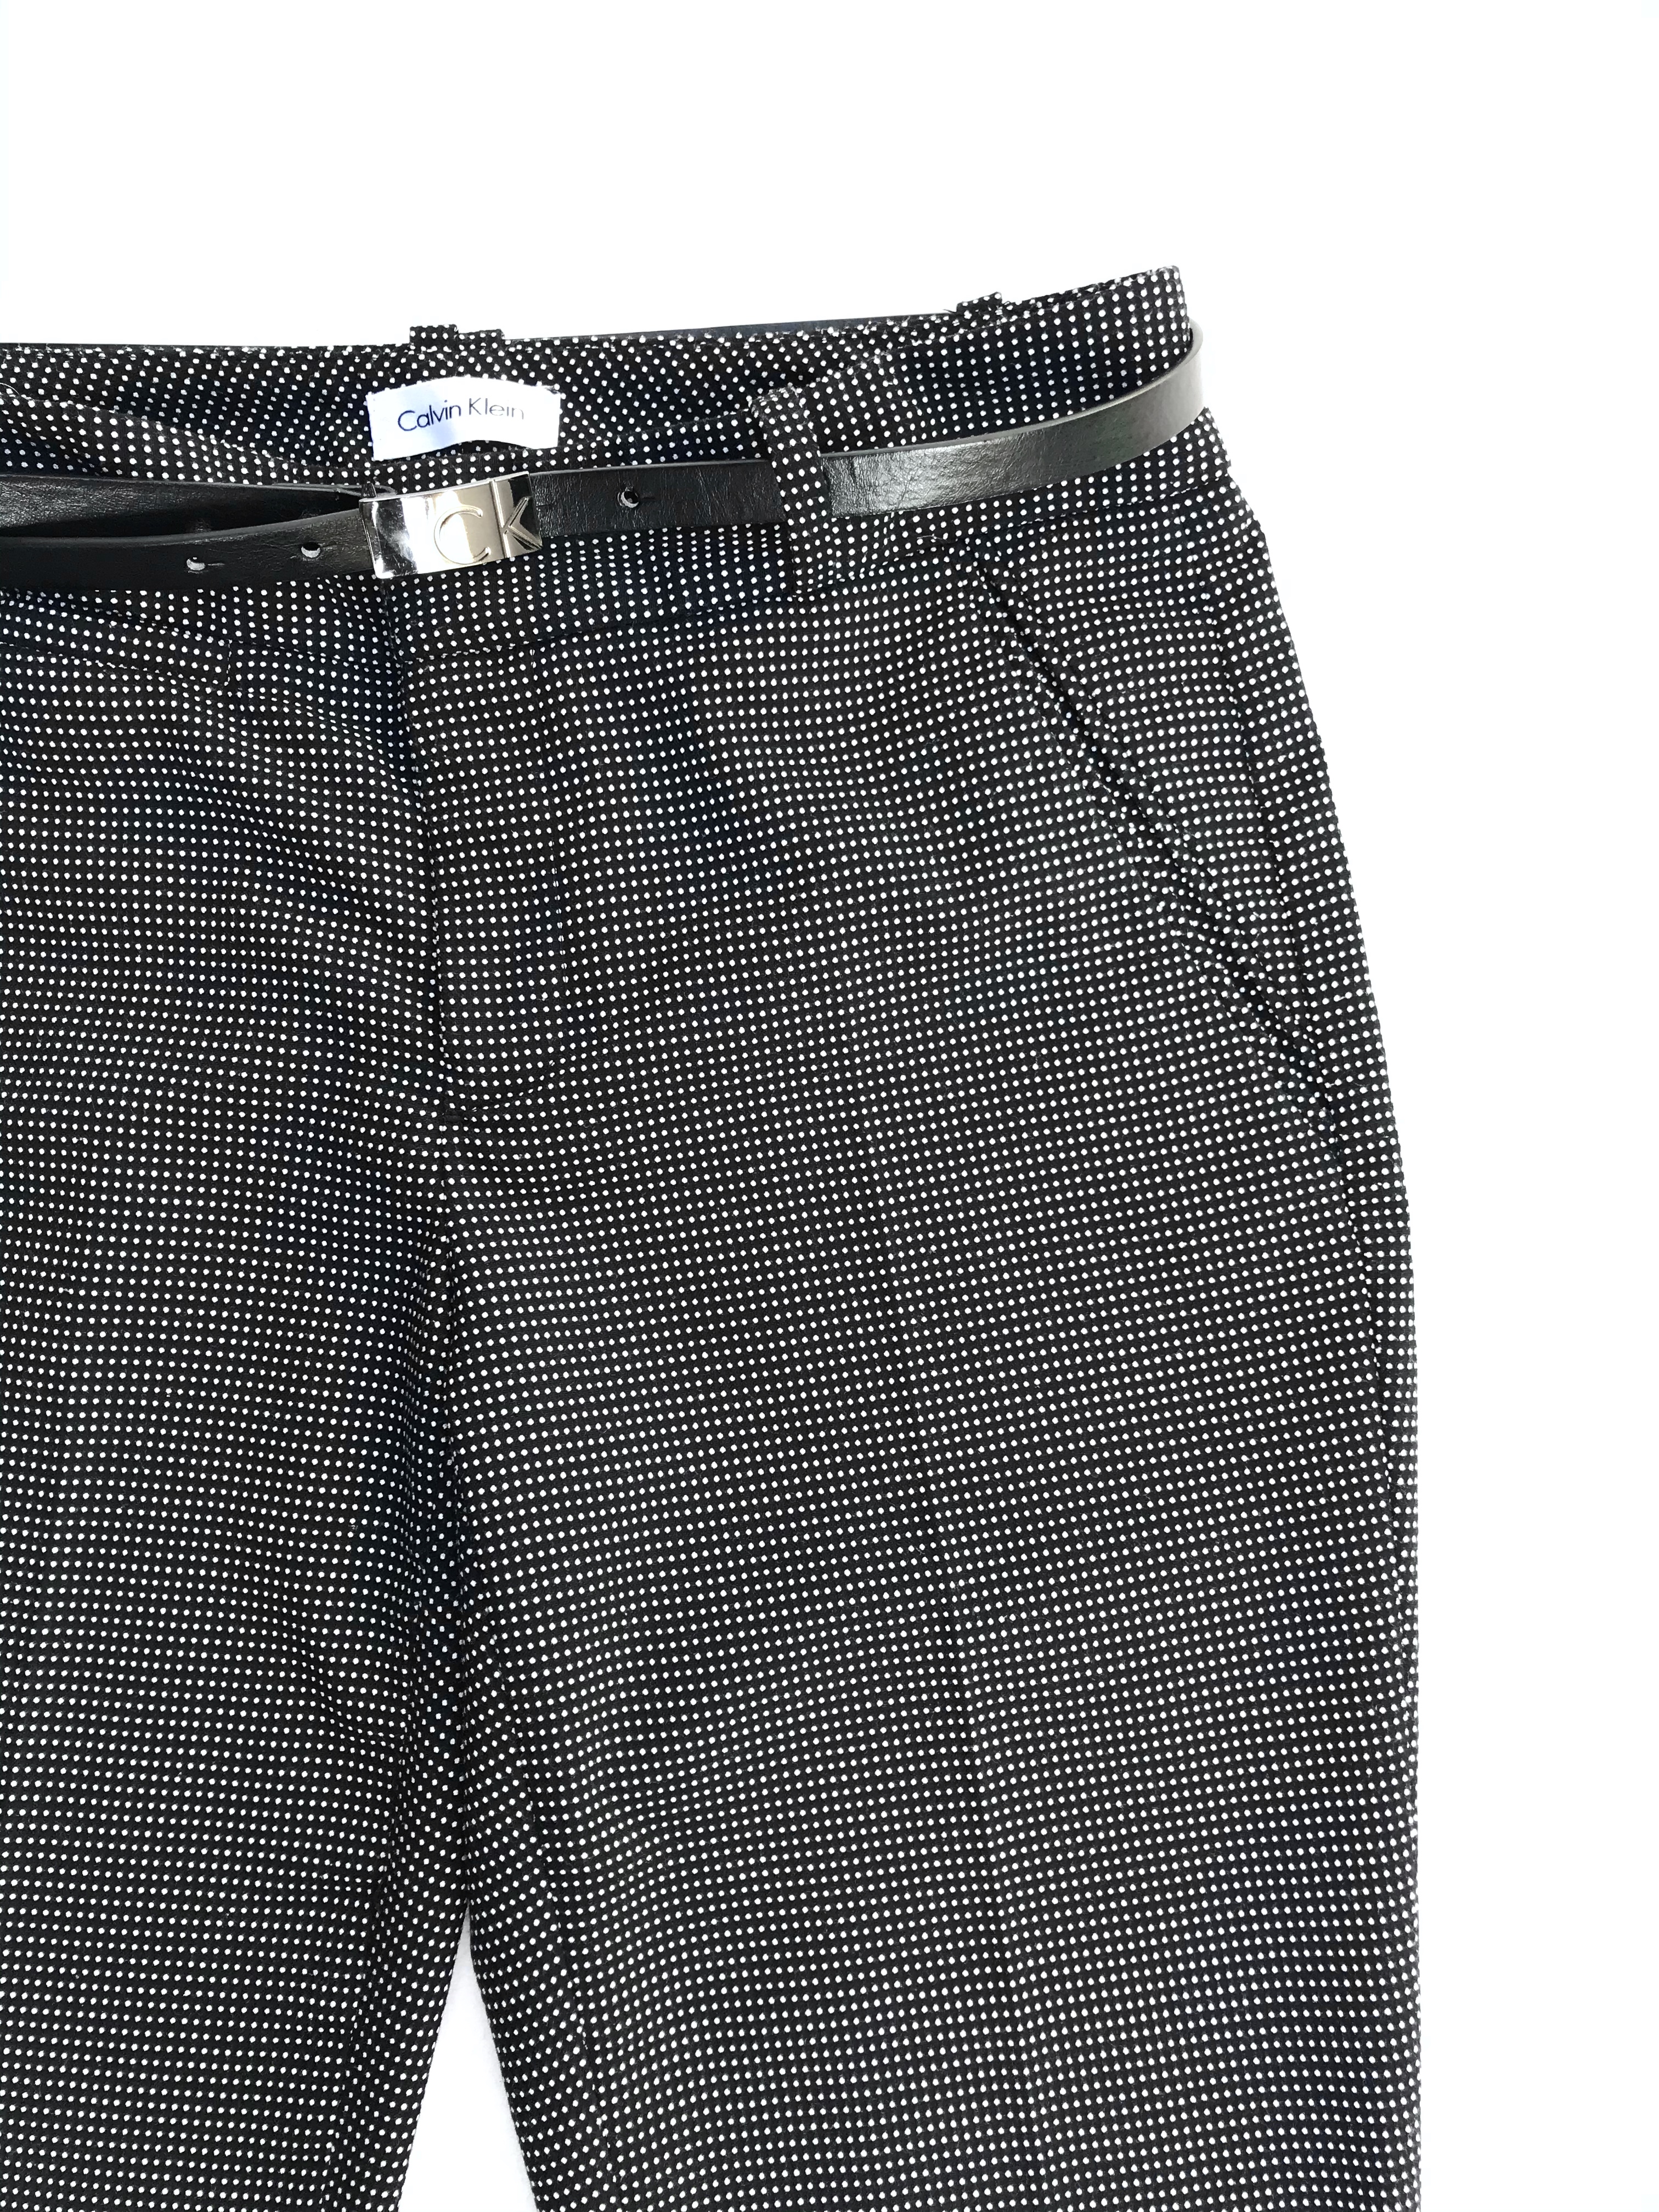 Pantalón Calvin Klein negro con puntos blancos, corte slim, bolsillos laterales. Pretina 78cm. Precio original S/ 280